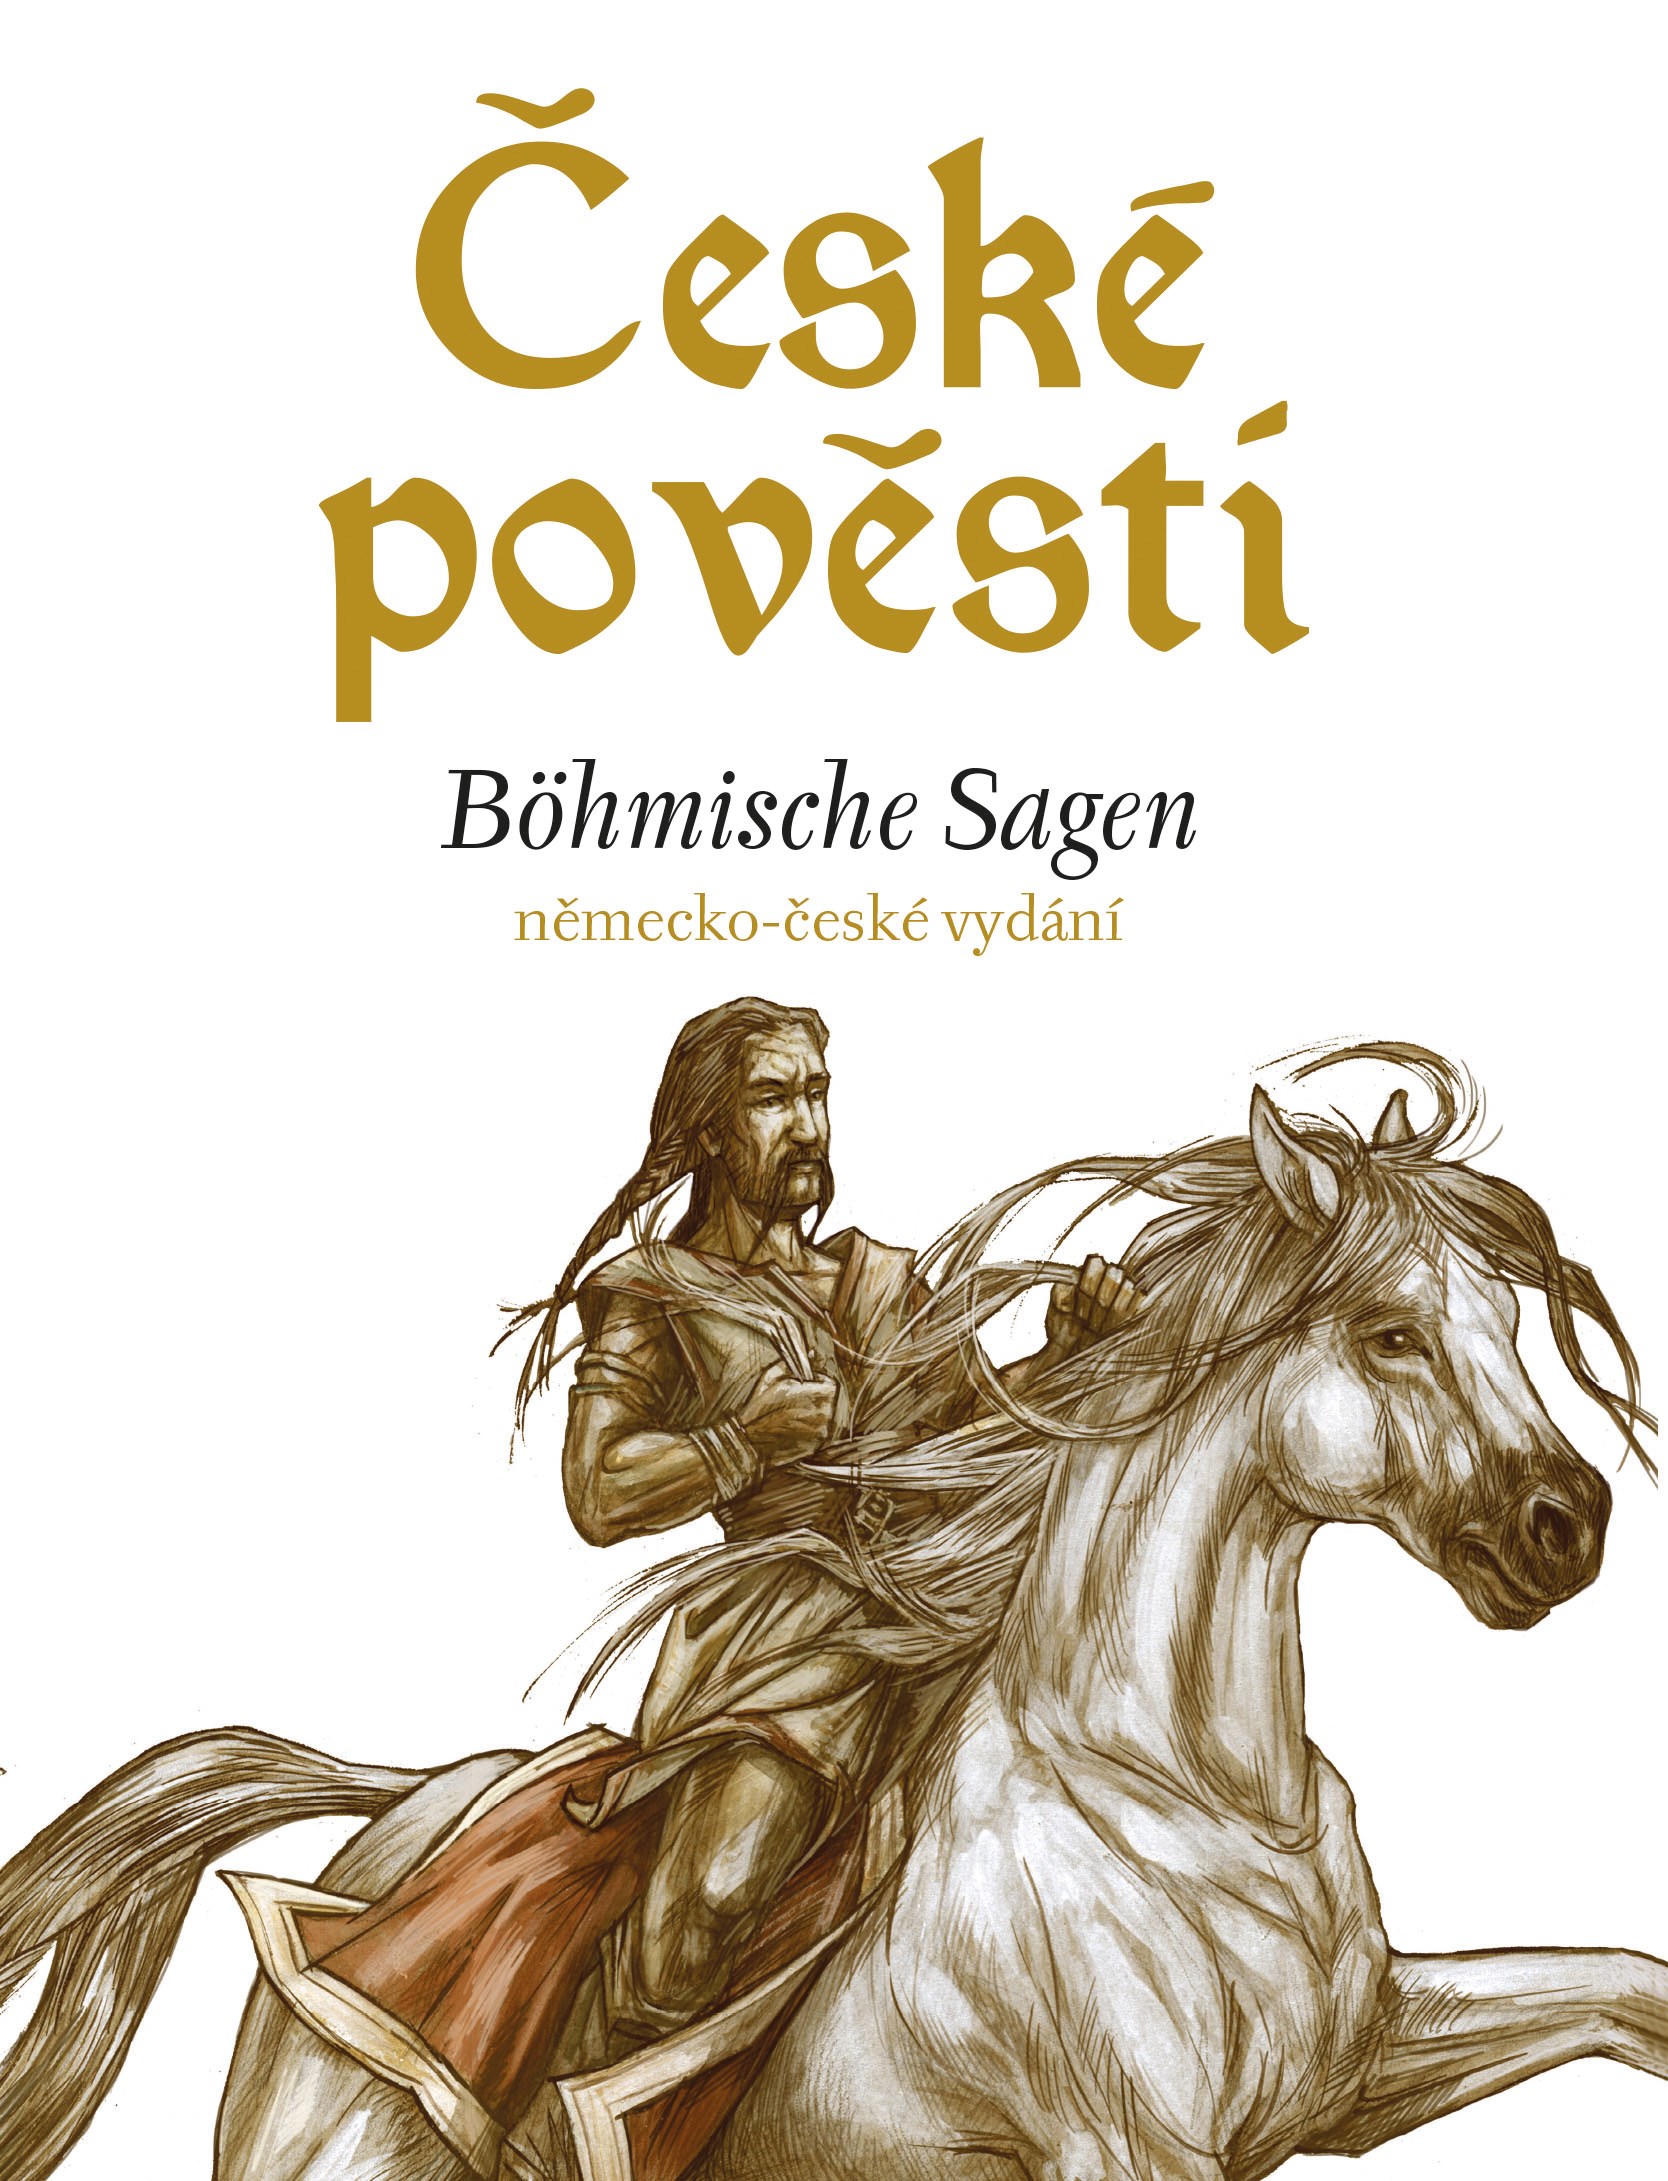 České pověsti: Böhmische Sagen německo-české vydání